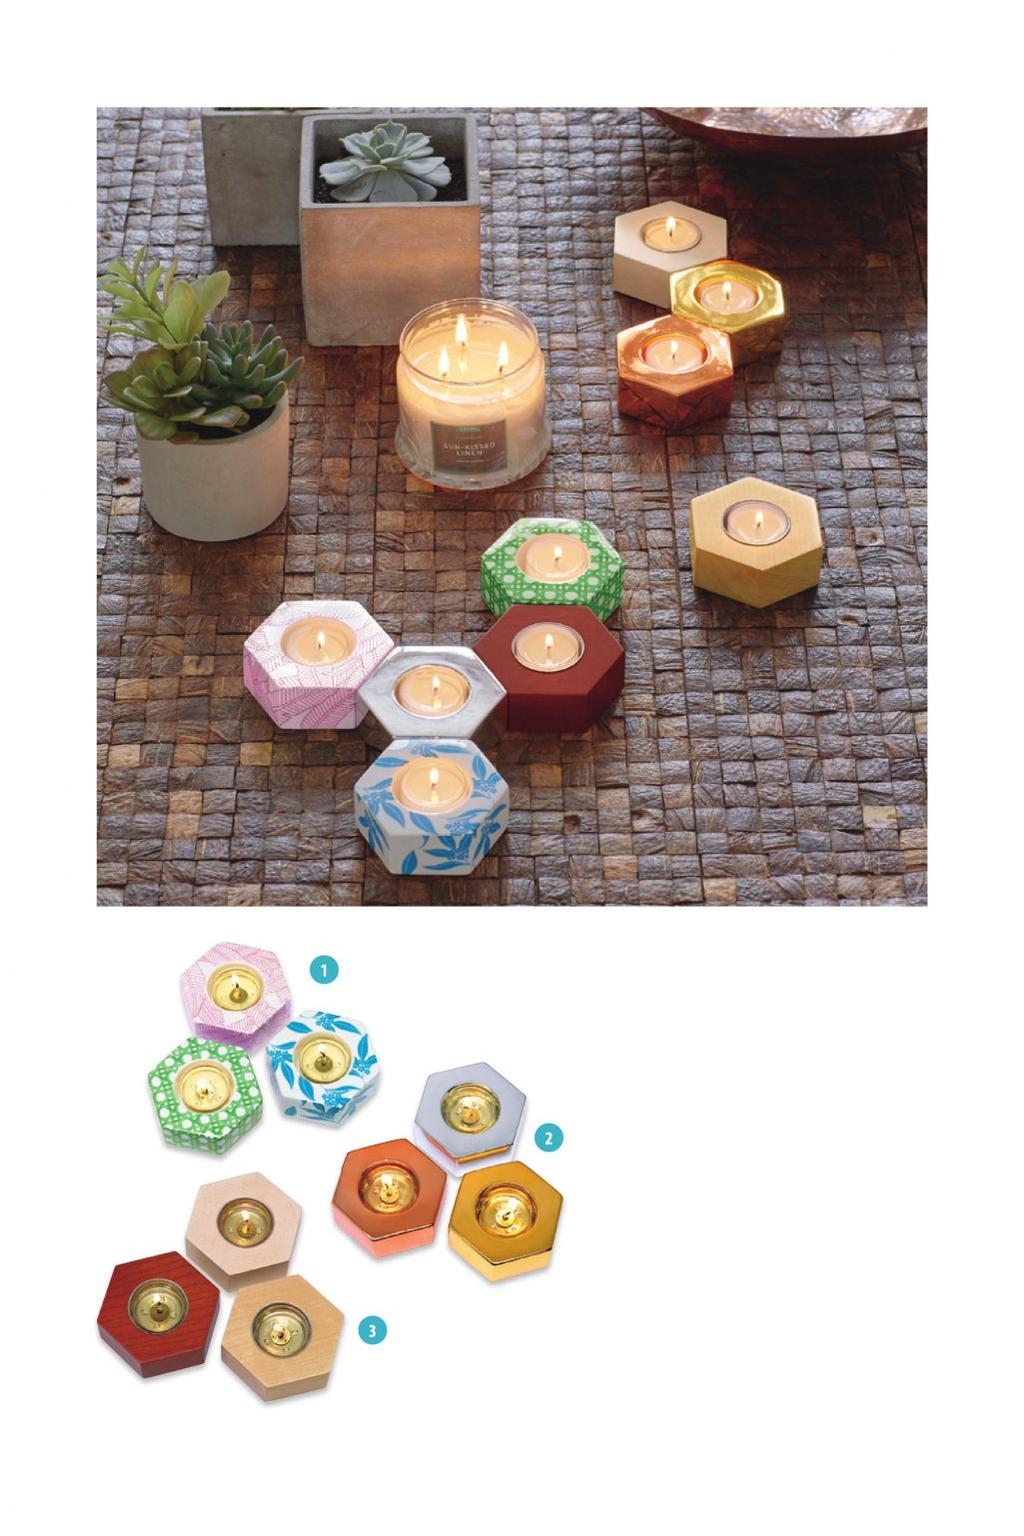 1. Teelichthalter Hexagon Keramik, Trio Sechseckige Keramikhalter mit verschiedenen Motiven, die sich nach Belieben kombinieren lassen. B: 10 cm. FürTeelichter. P92648 34,90/Trio 2.